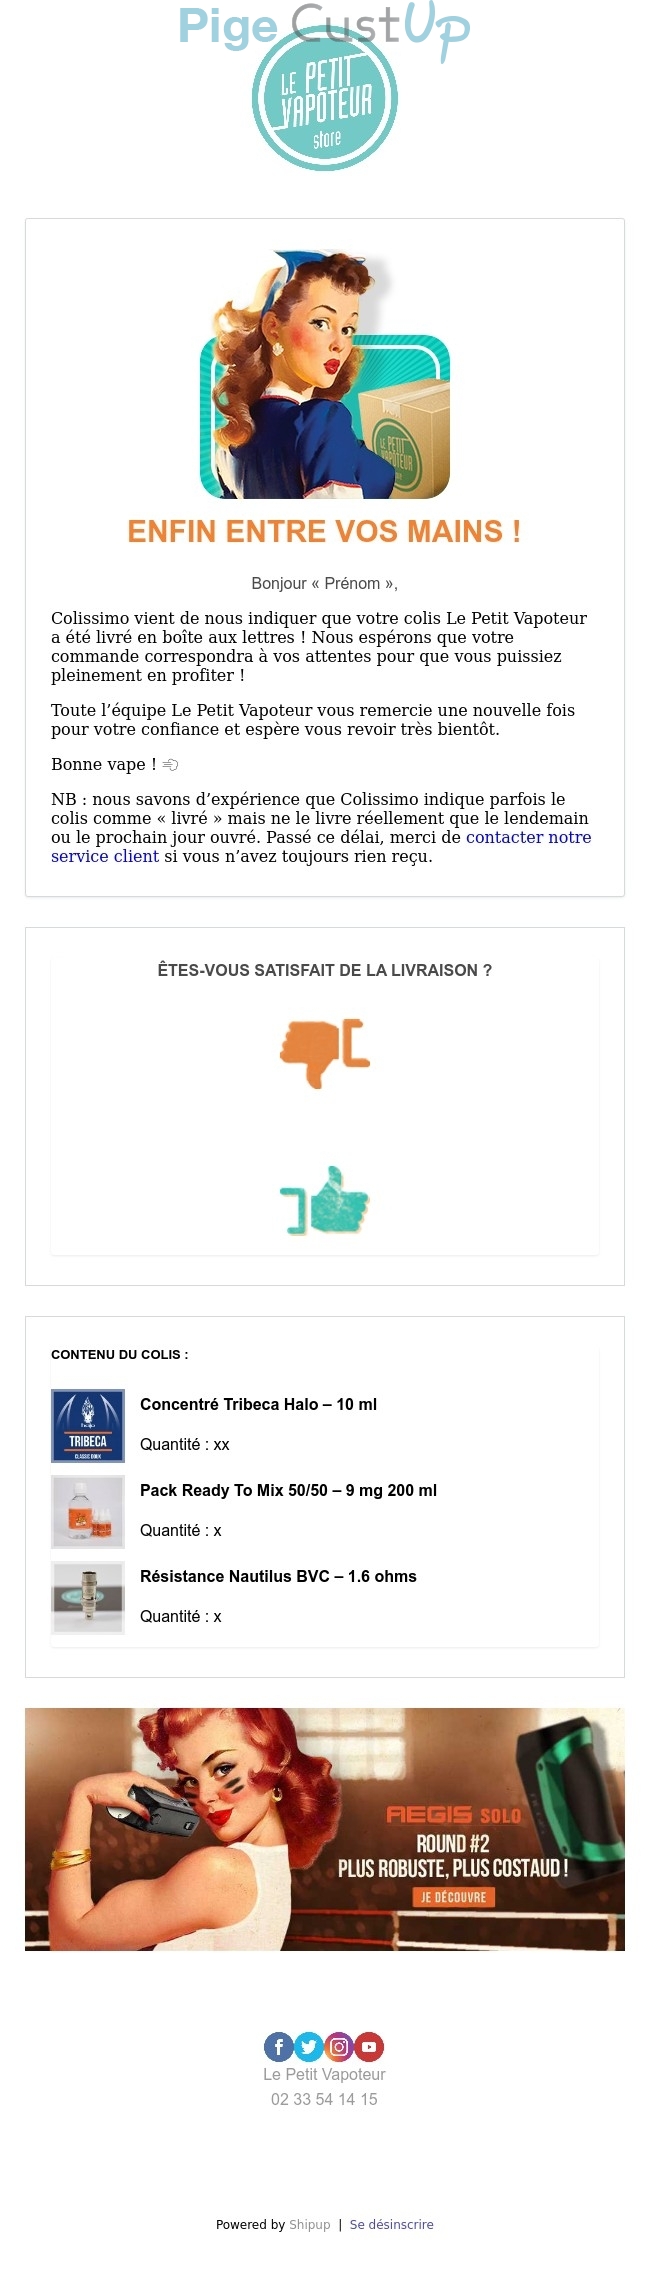 Exemple de Type de media  e-mailing - Le Petit Vapoteur - Transactionnels - Confirmation Livraison